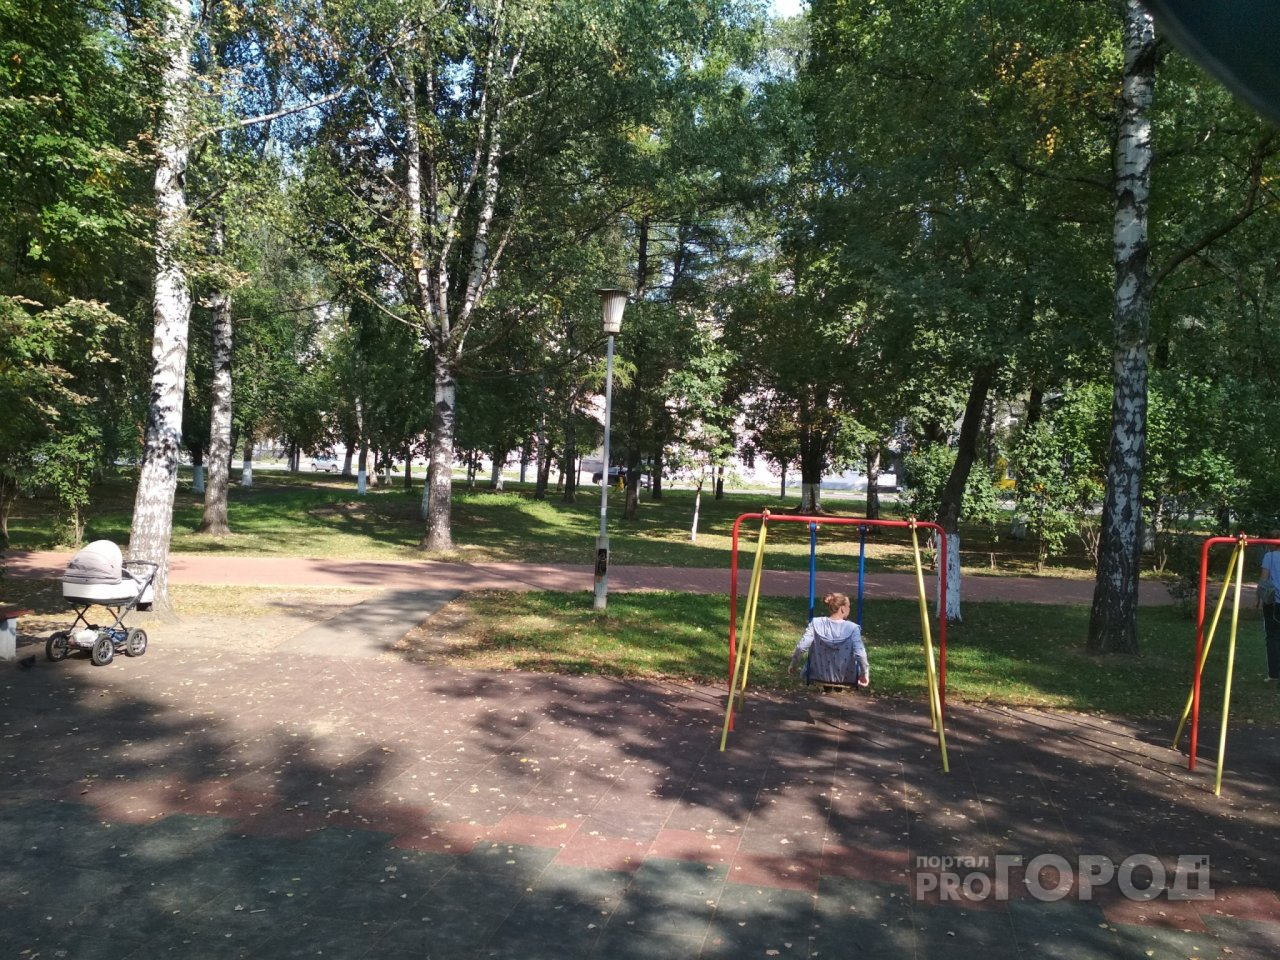 Эффект "Pro Города": в Ярославле отремонтировали опасную детскую площадку